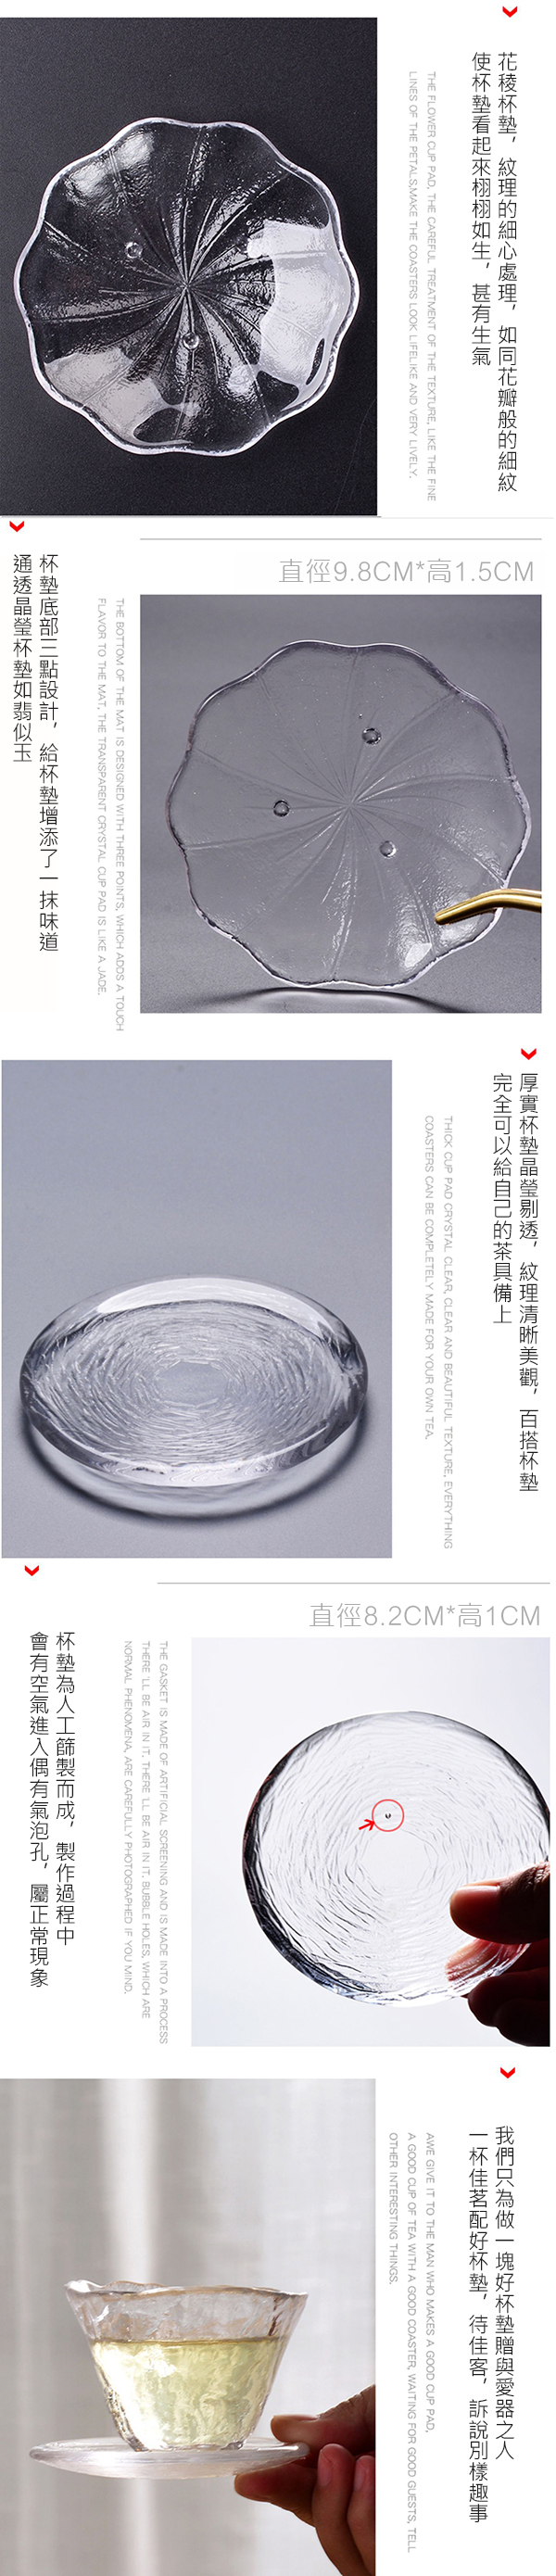 日式水晶玻璃茶托杯墊    商品貨號: ZH35260001